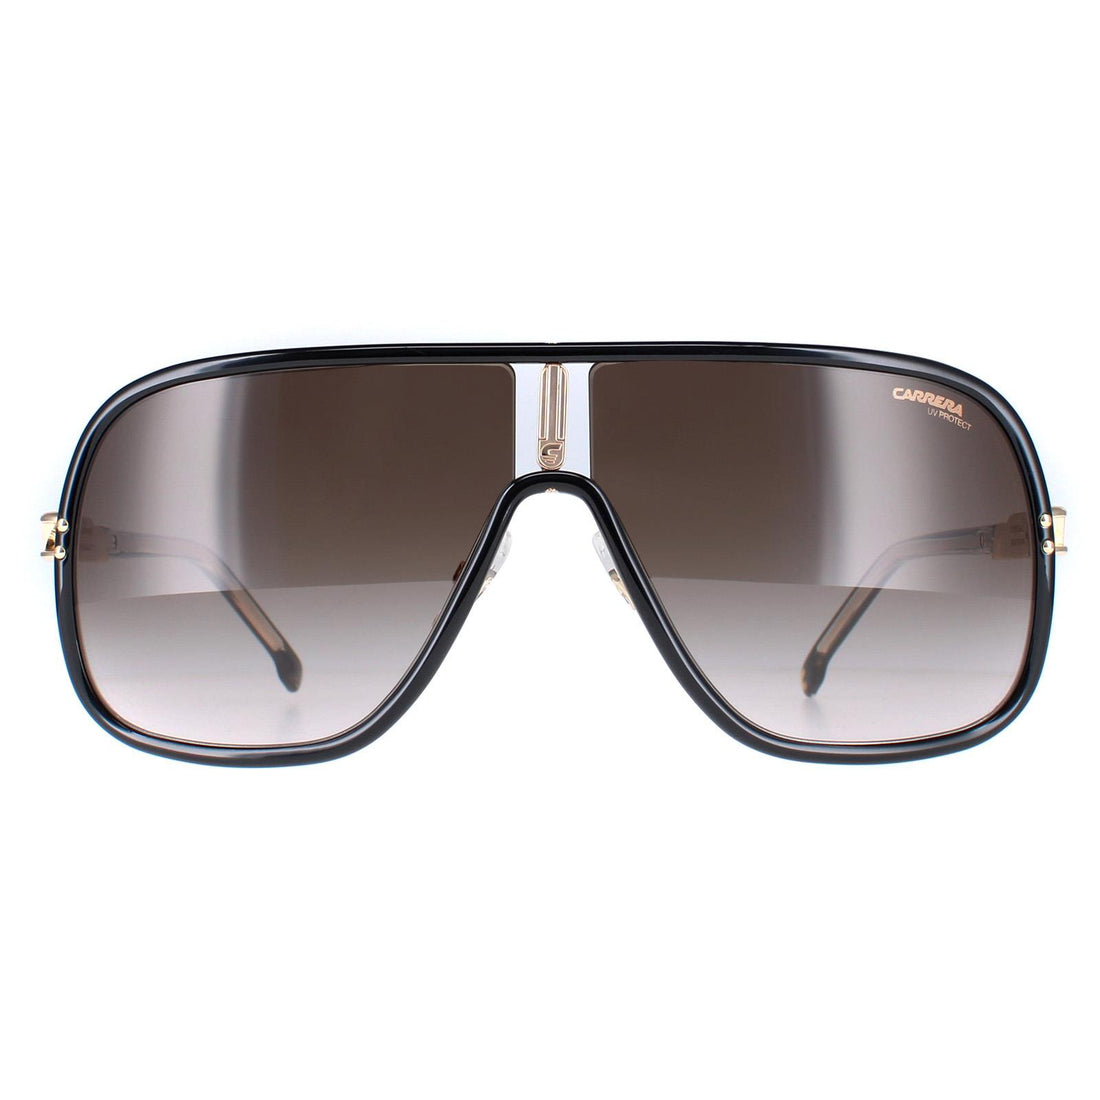 Carrera Flaglab 11 Sunglasses Black Brown / Brown Gradient